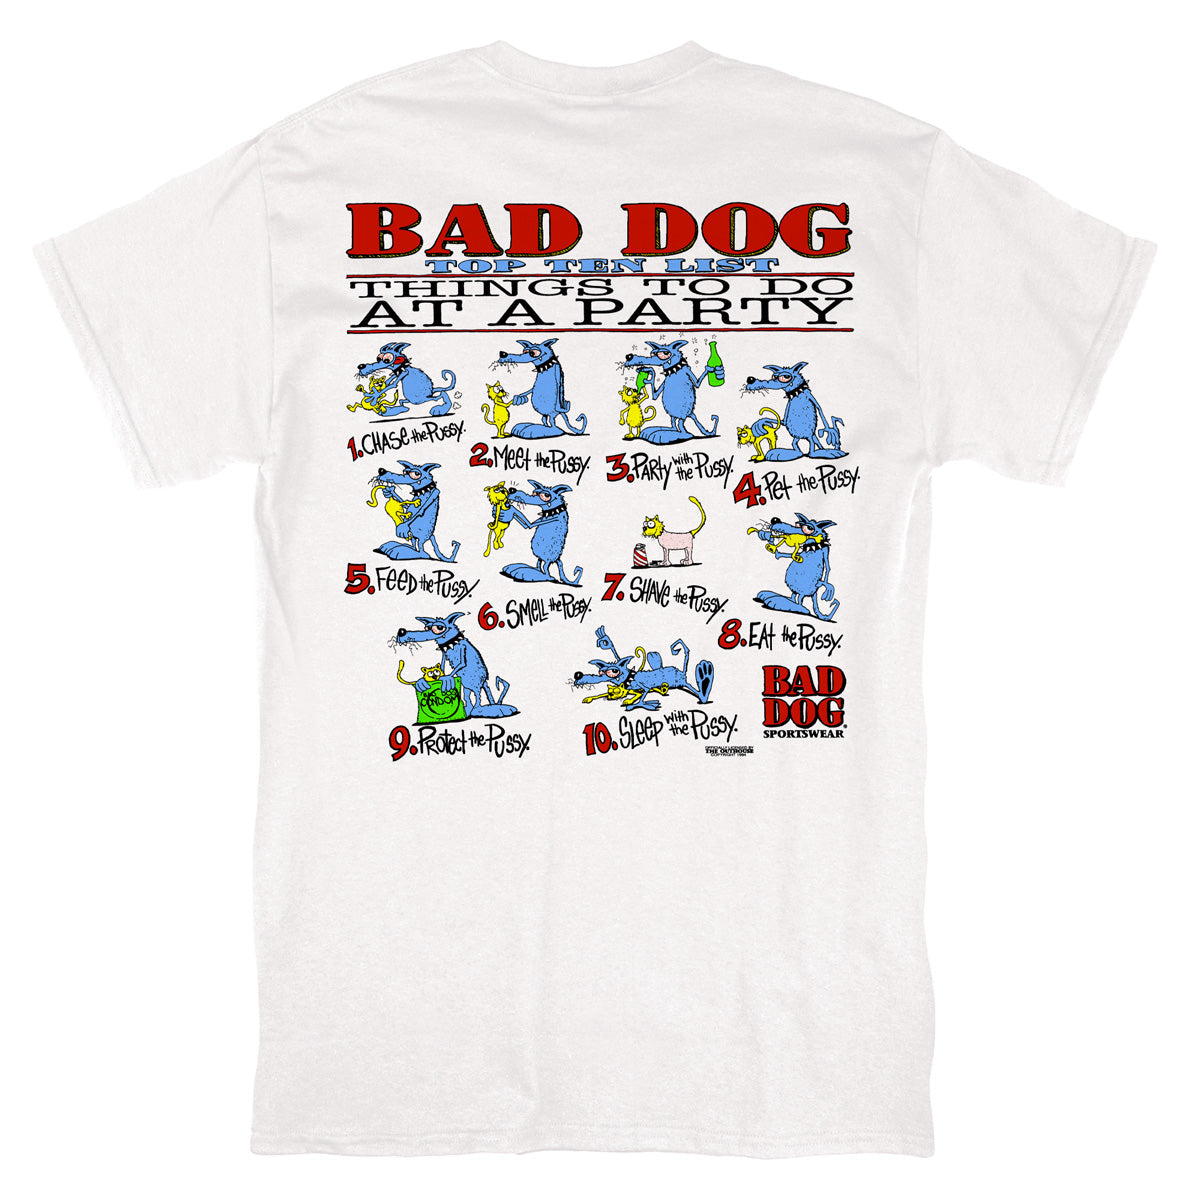 Bad Dog Top 10 Tee